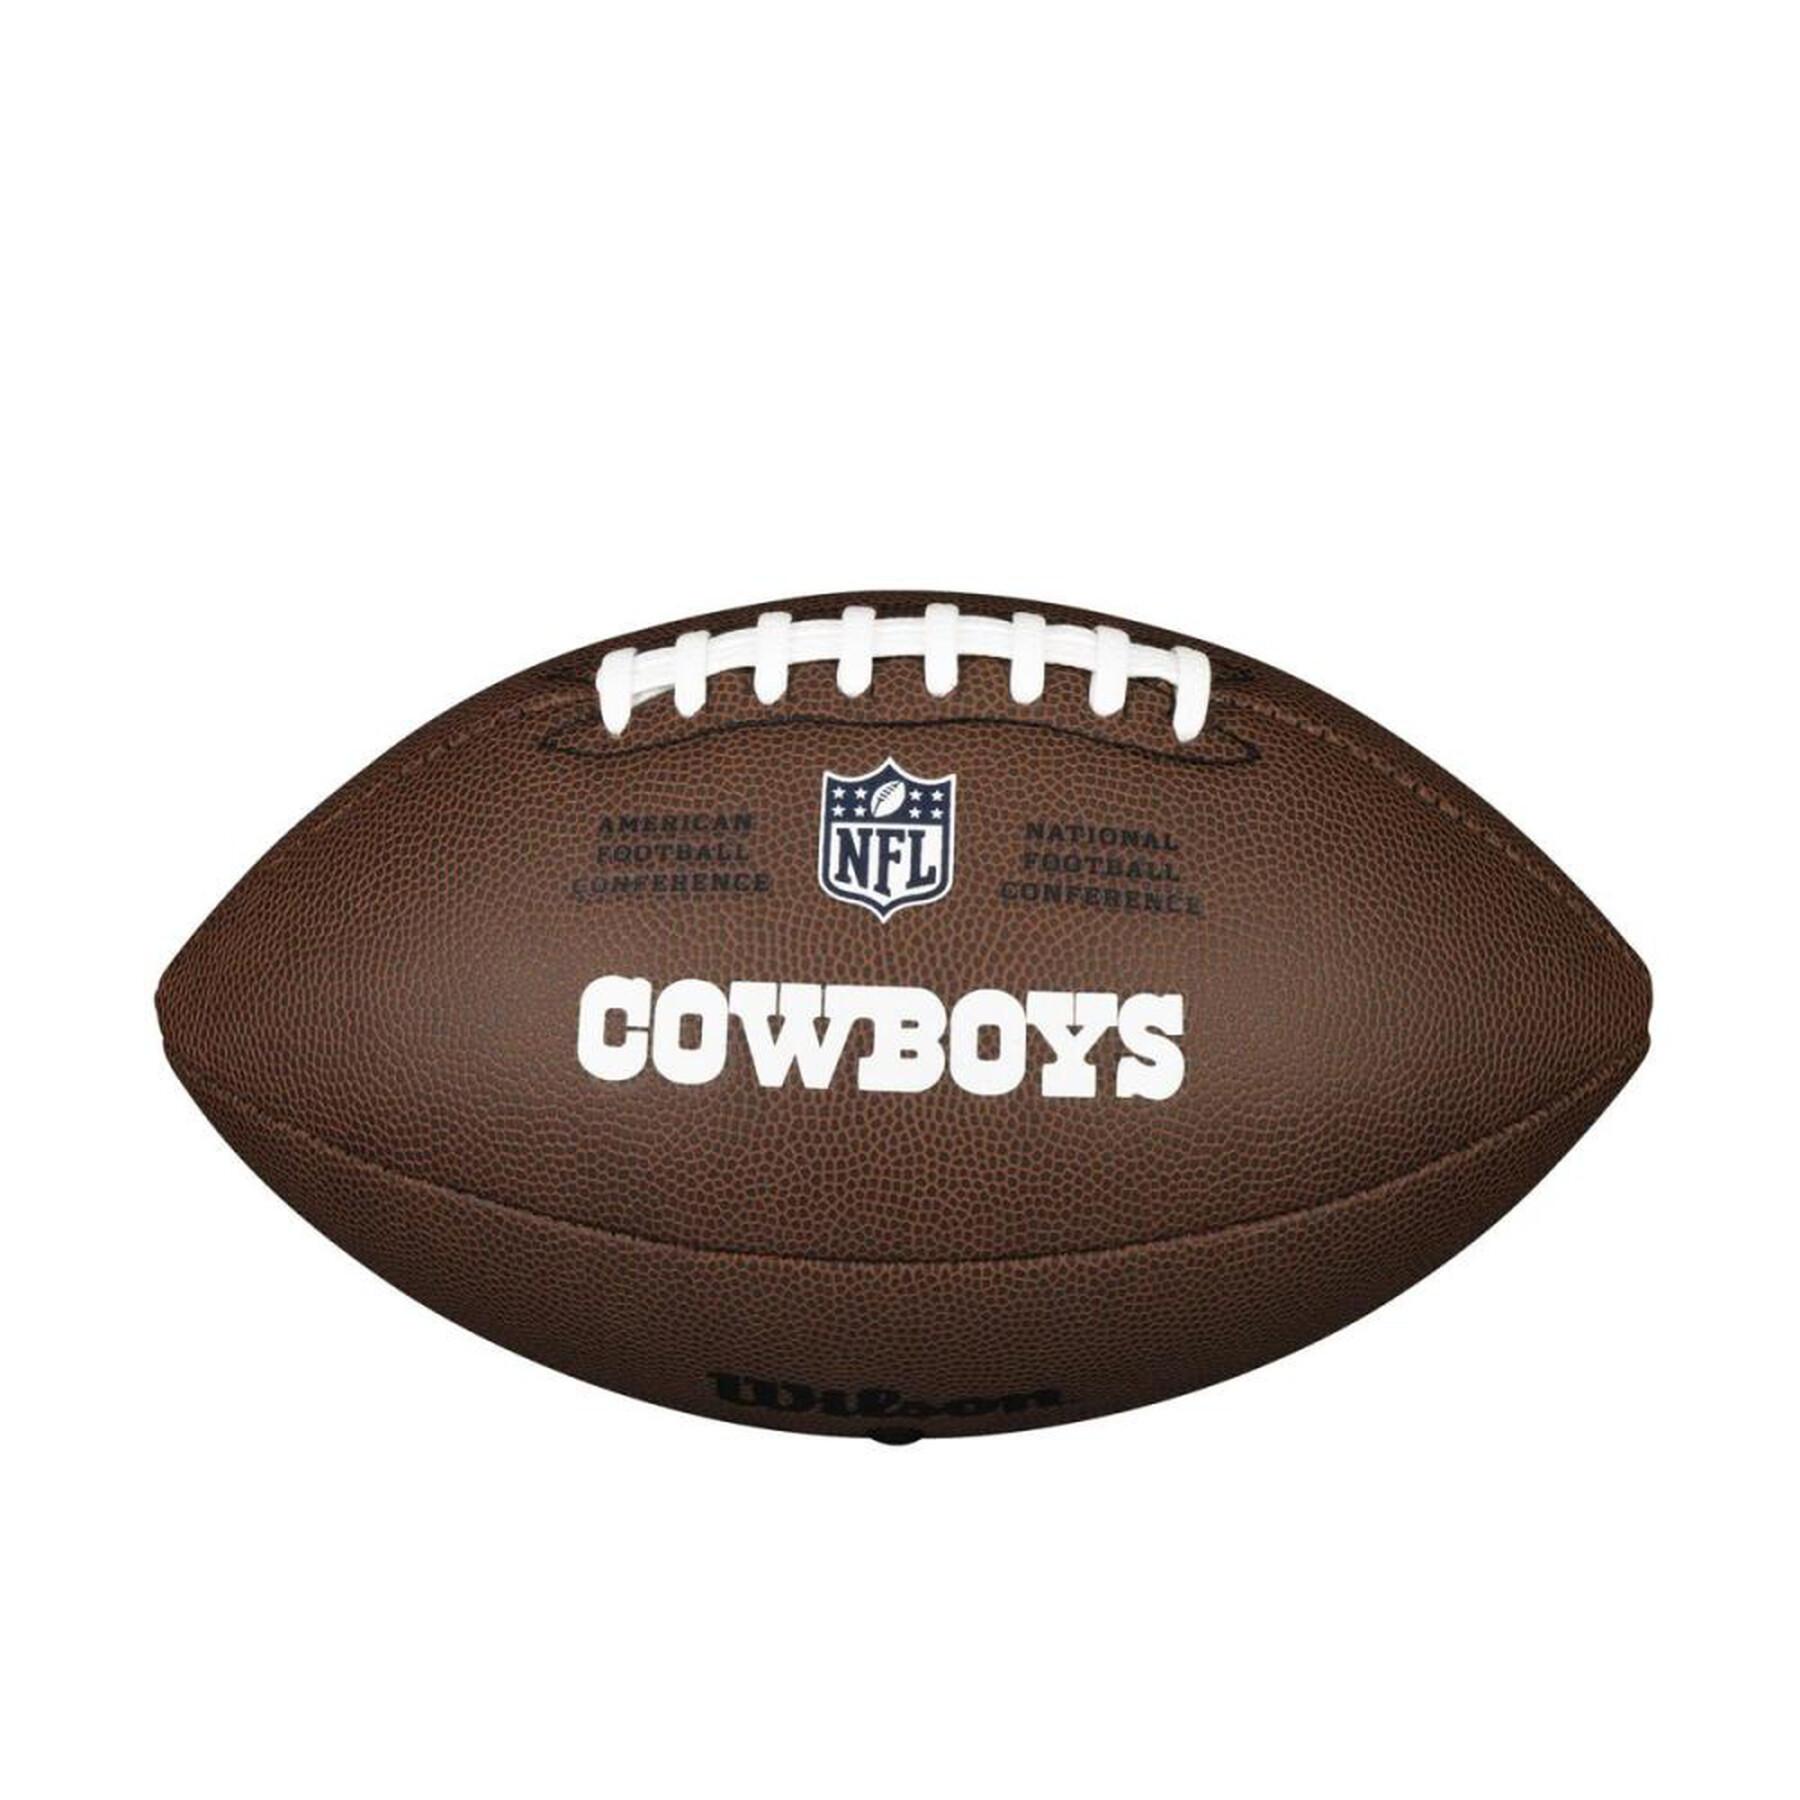 American Football Wilson Cowboys NFL Licensed